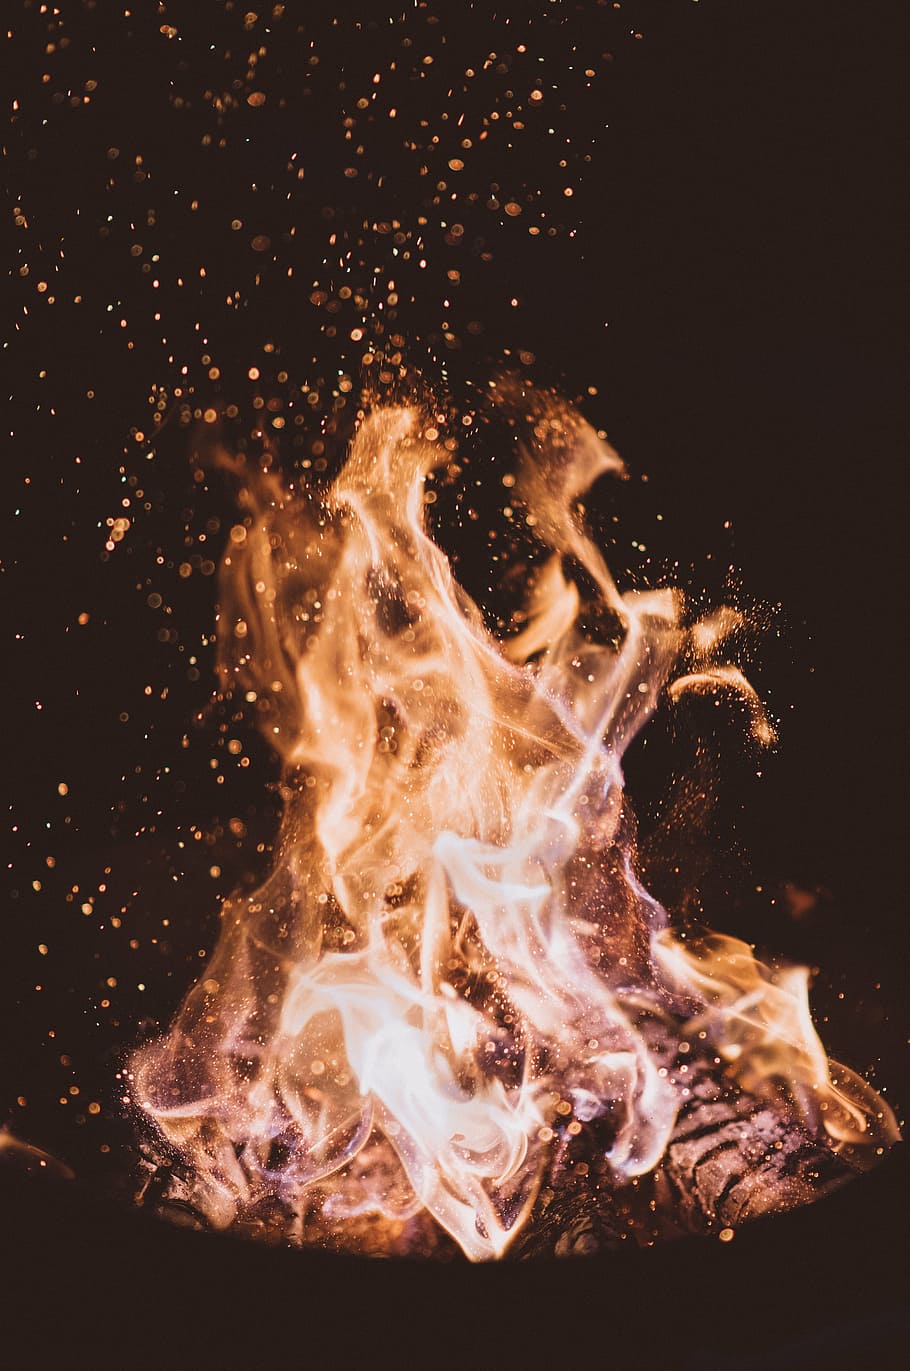 fotografia em lapso de tempo, chama, fogo, luz, lenha, carvão vegetal, cinzas, calor, fogueira, água